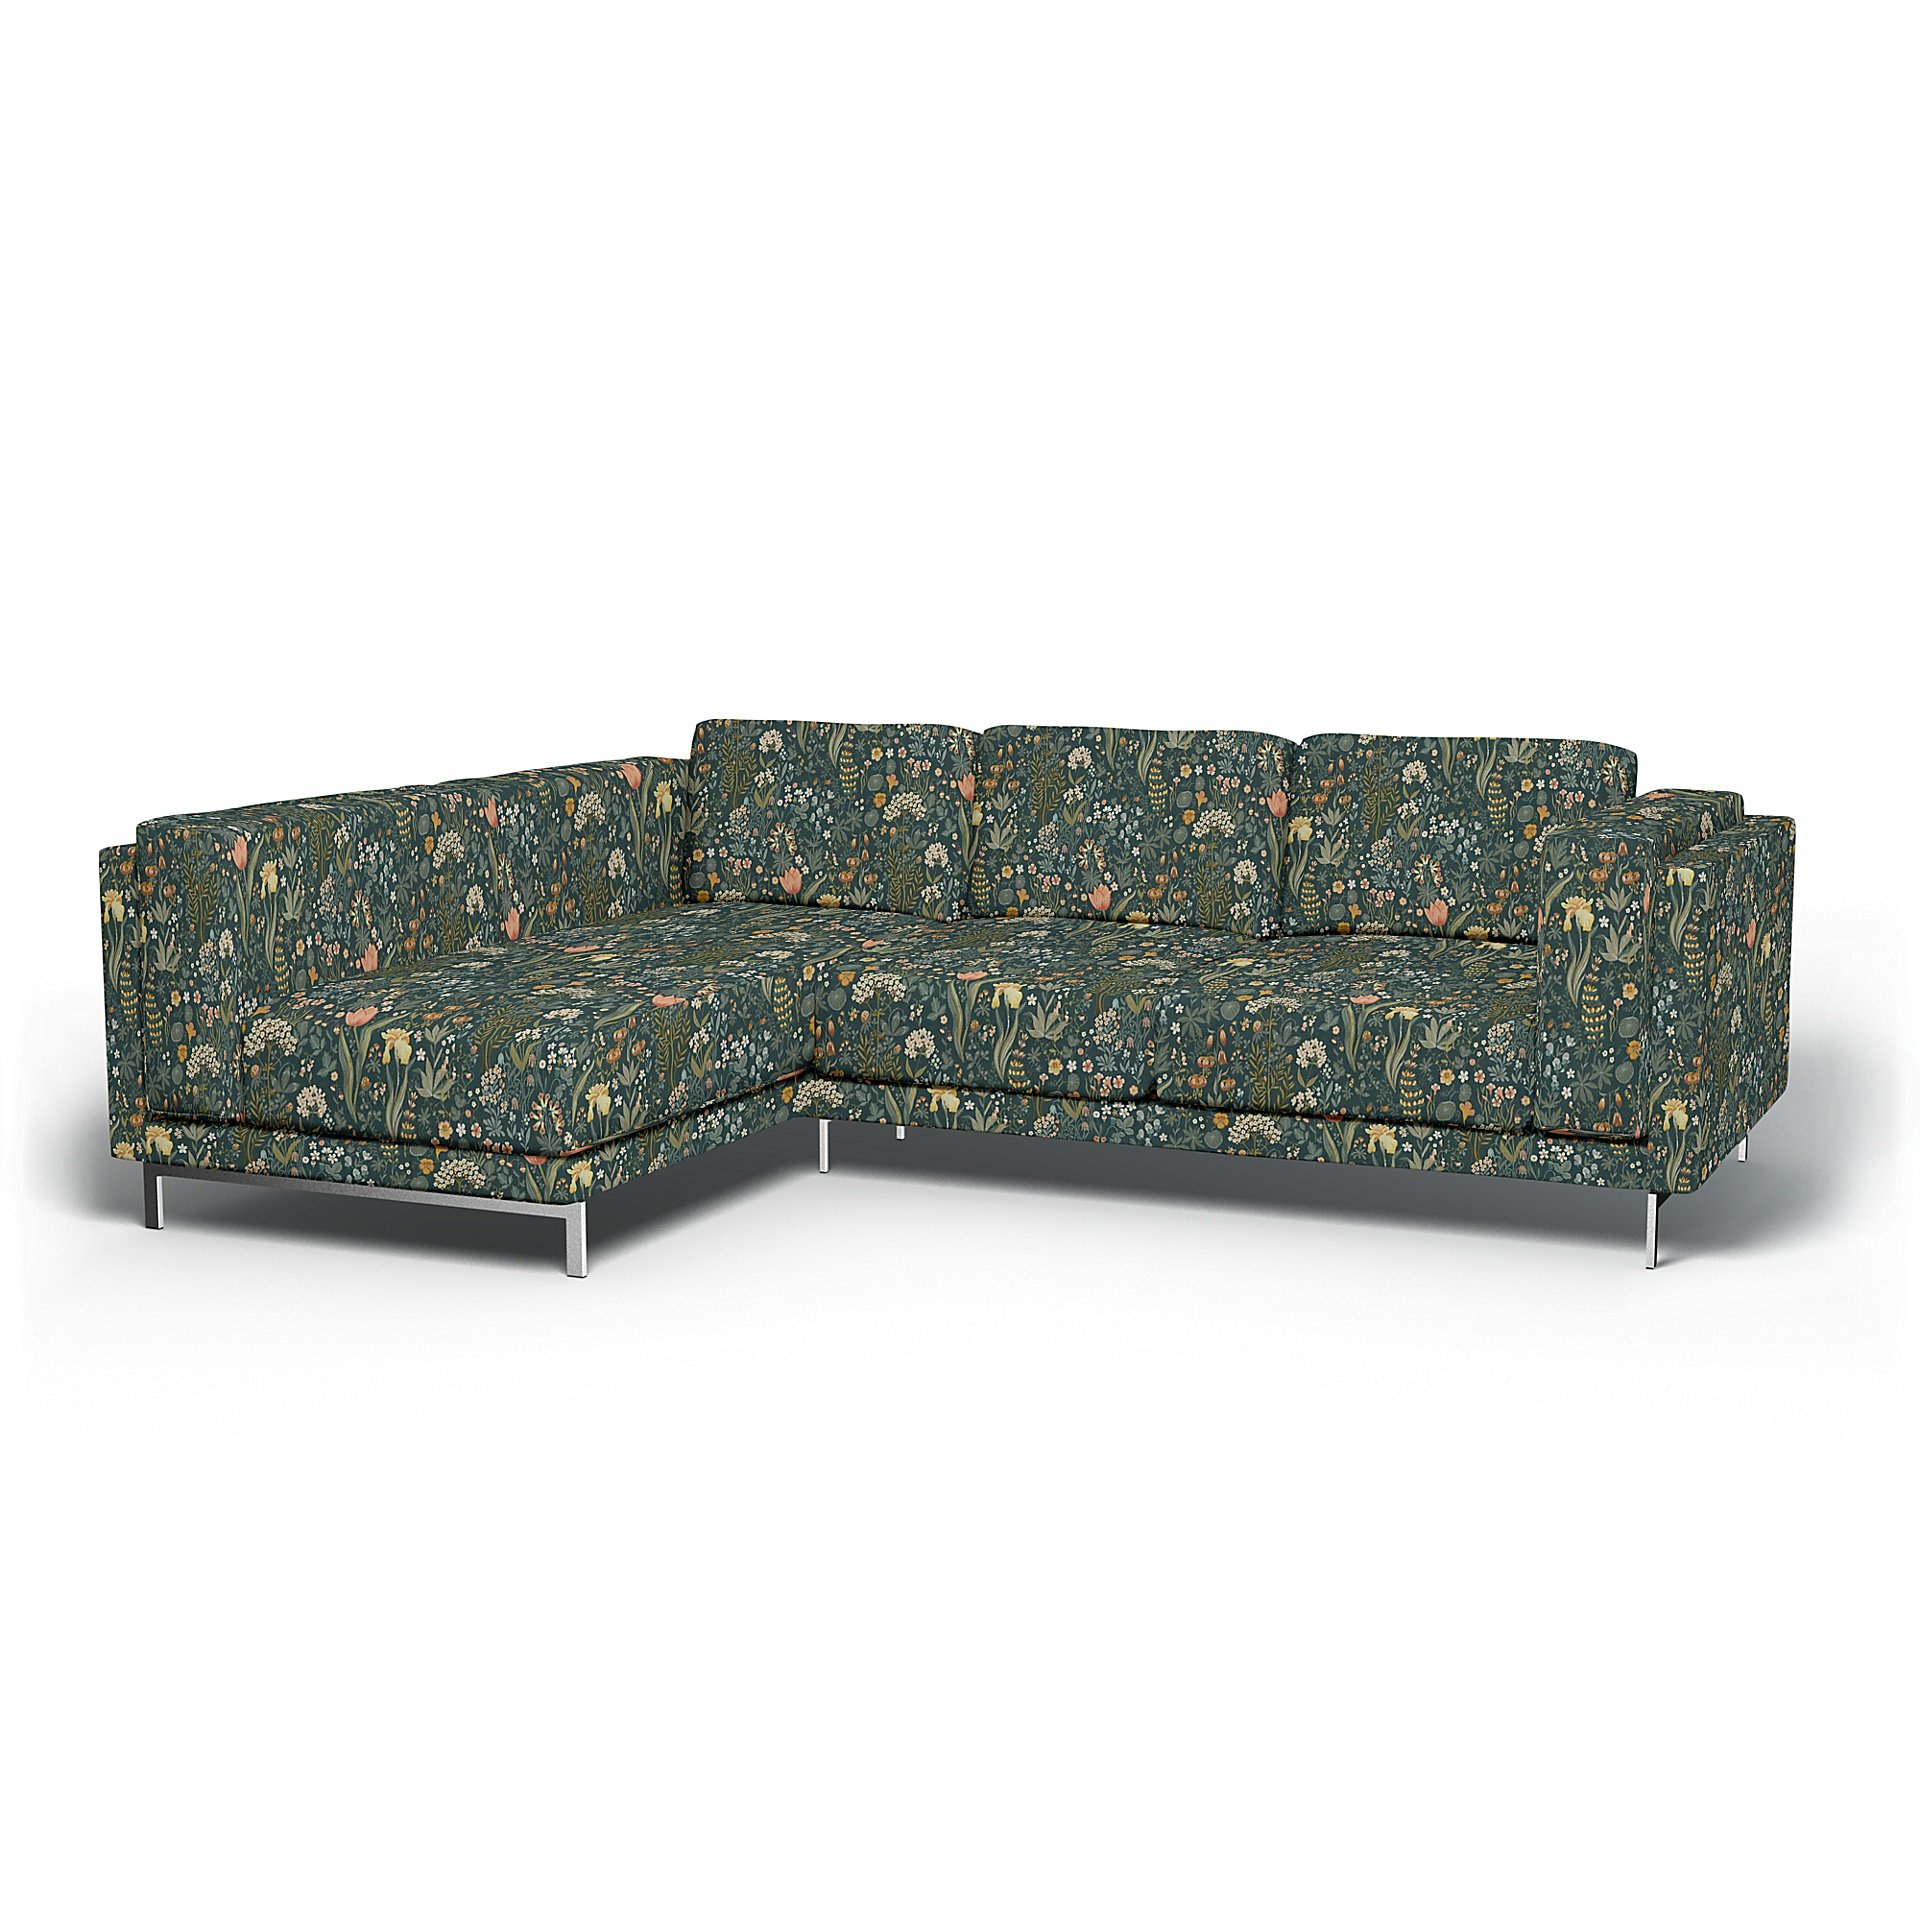 IKEA - Nockeby 3 Seater Sofa with Left Chaise Cover, Blomsterhav Dark, BEMZ x BORASTAPETER COLLECTIO